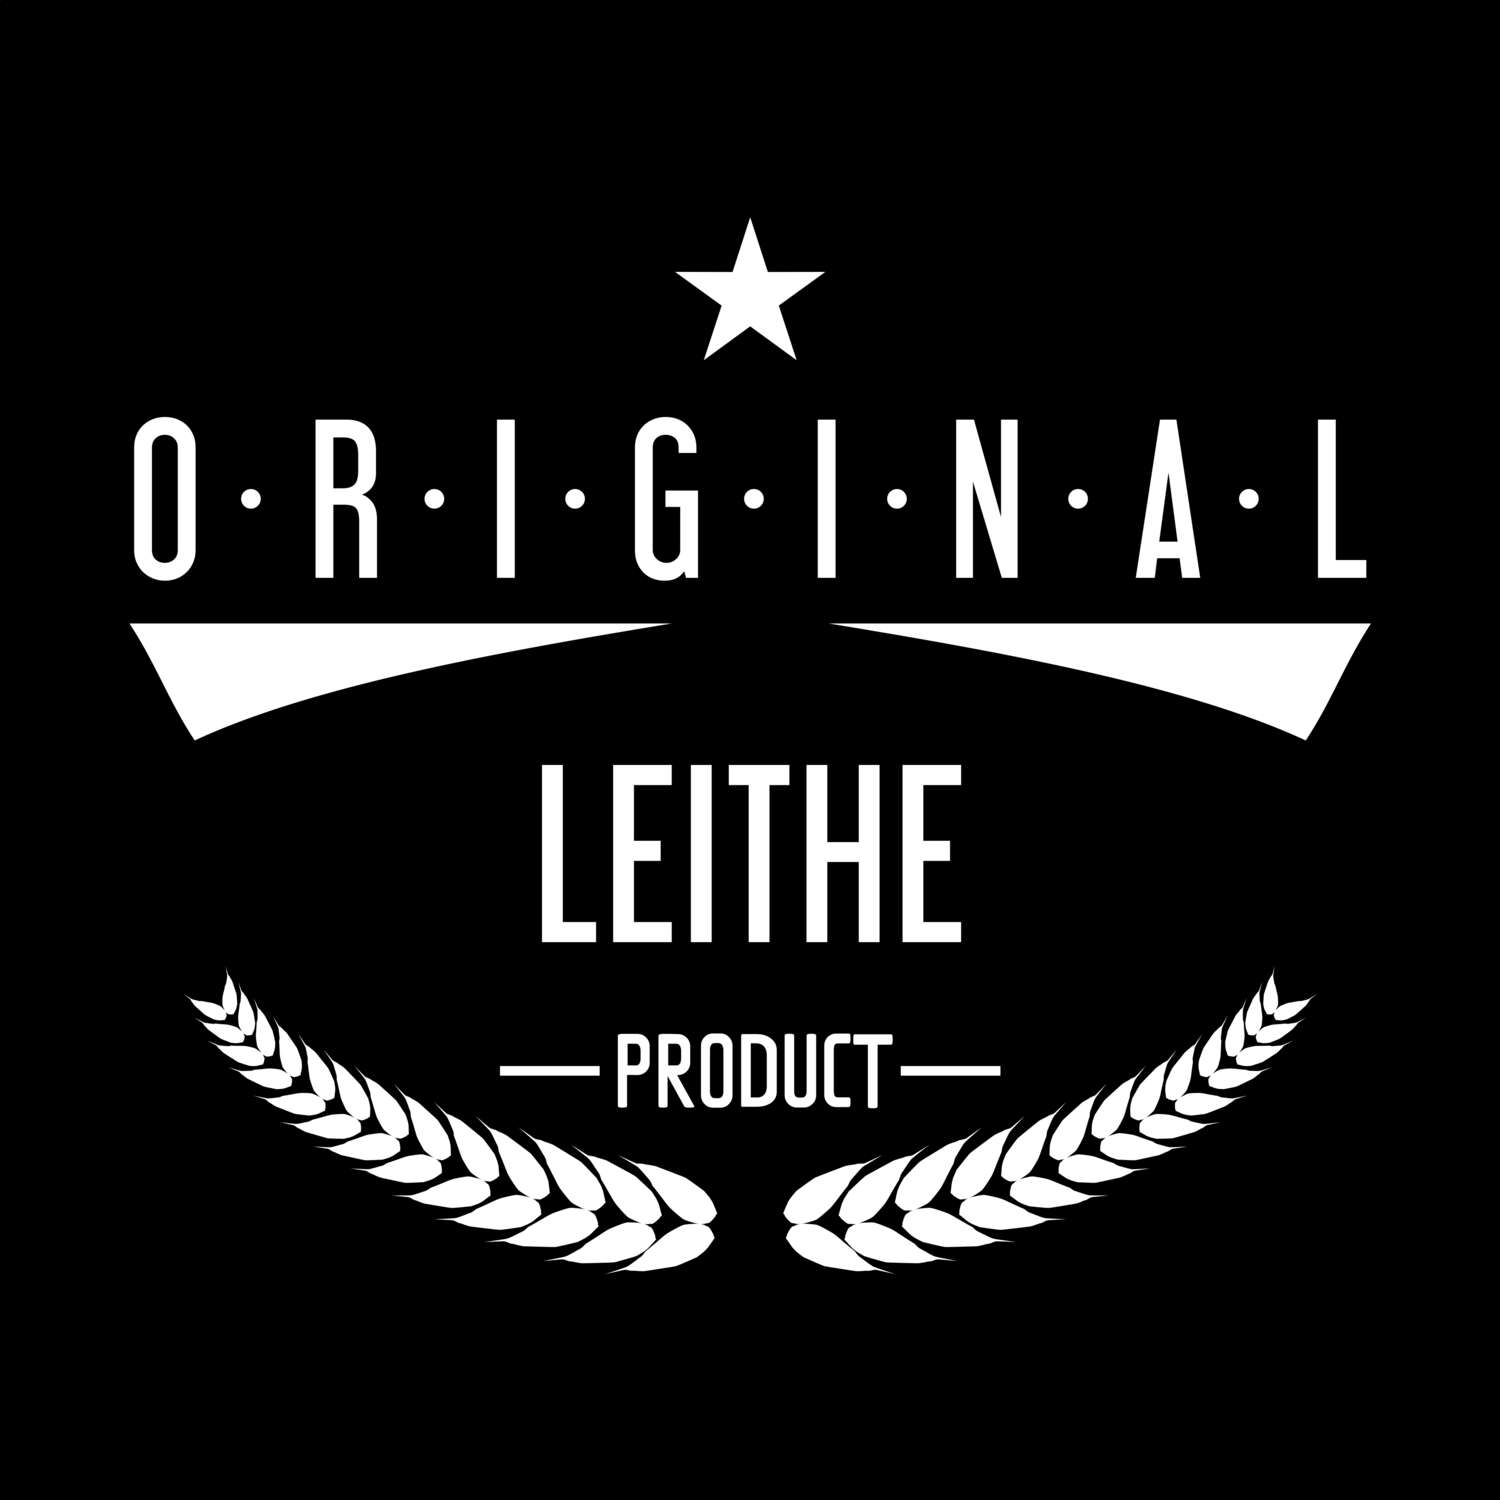 Leithe T-Shirt »Original Product«